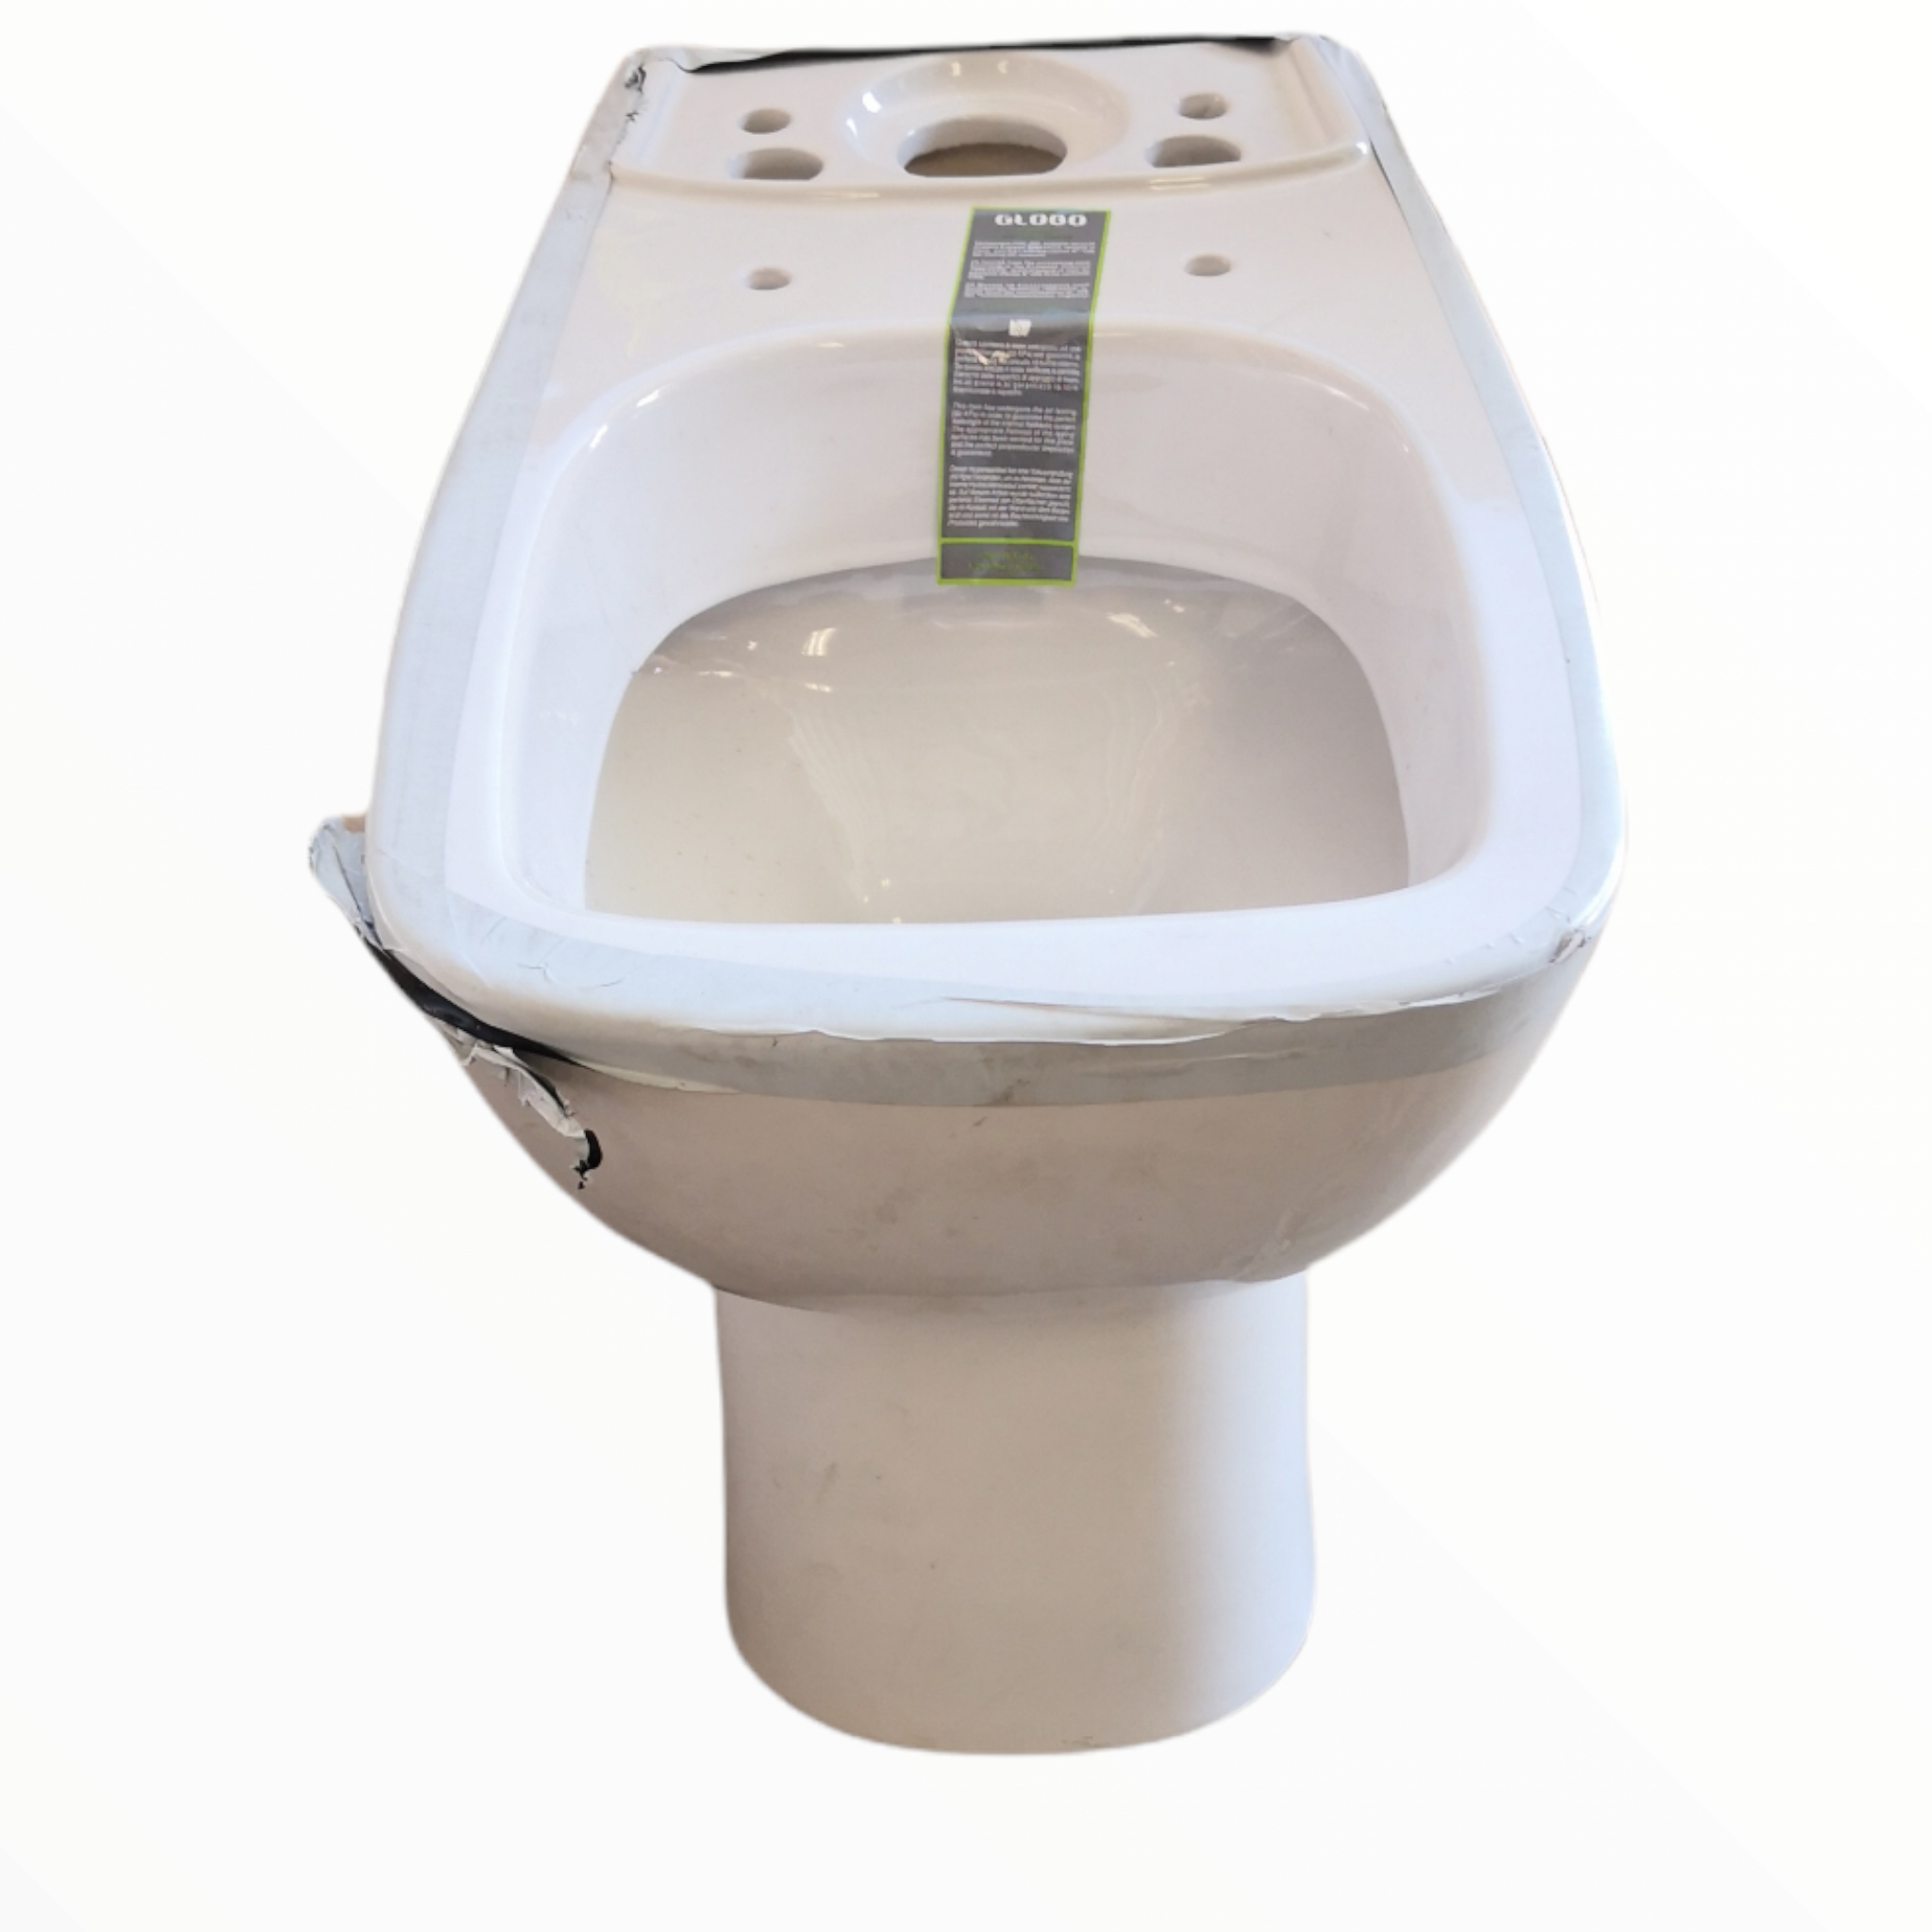 Taza wc de baño Globo DA003 con accesorios – Sesuconsa by Proveer